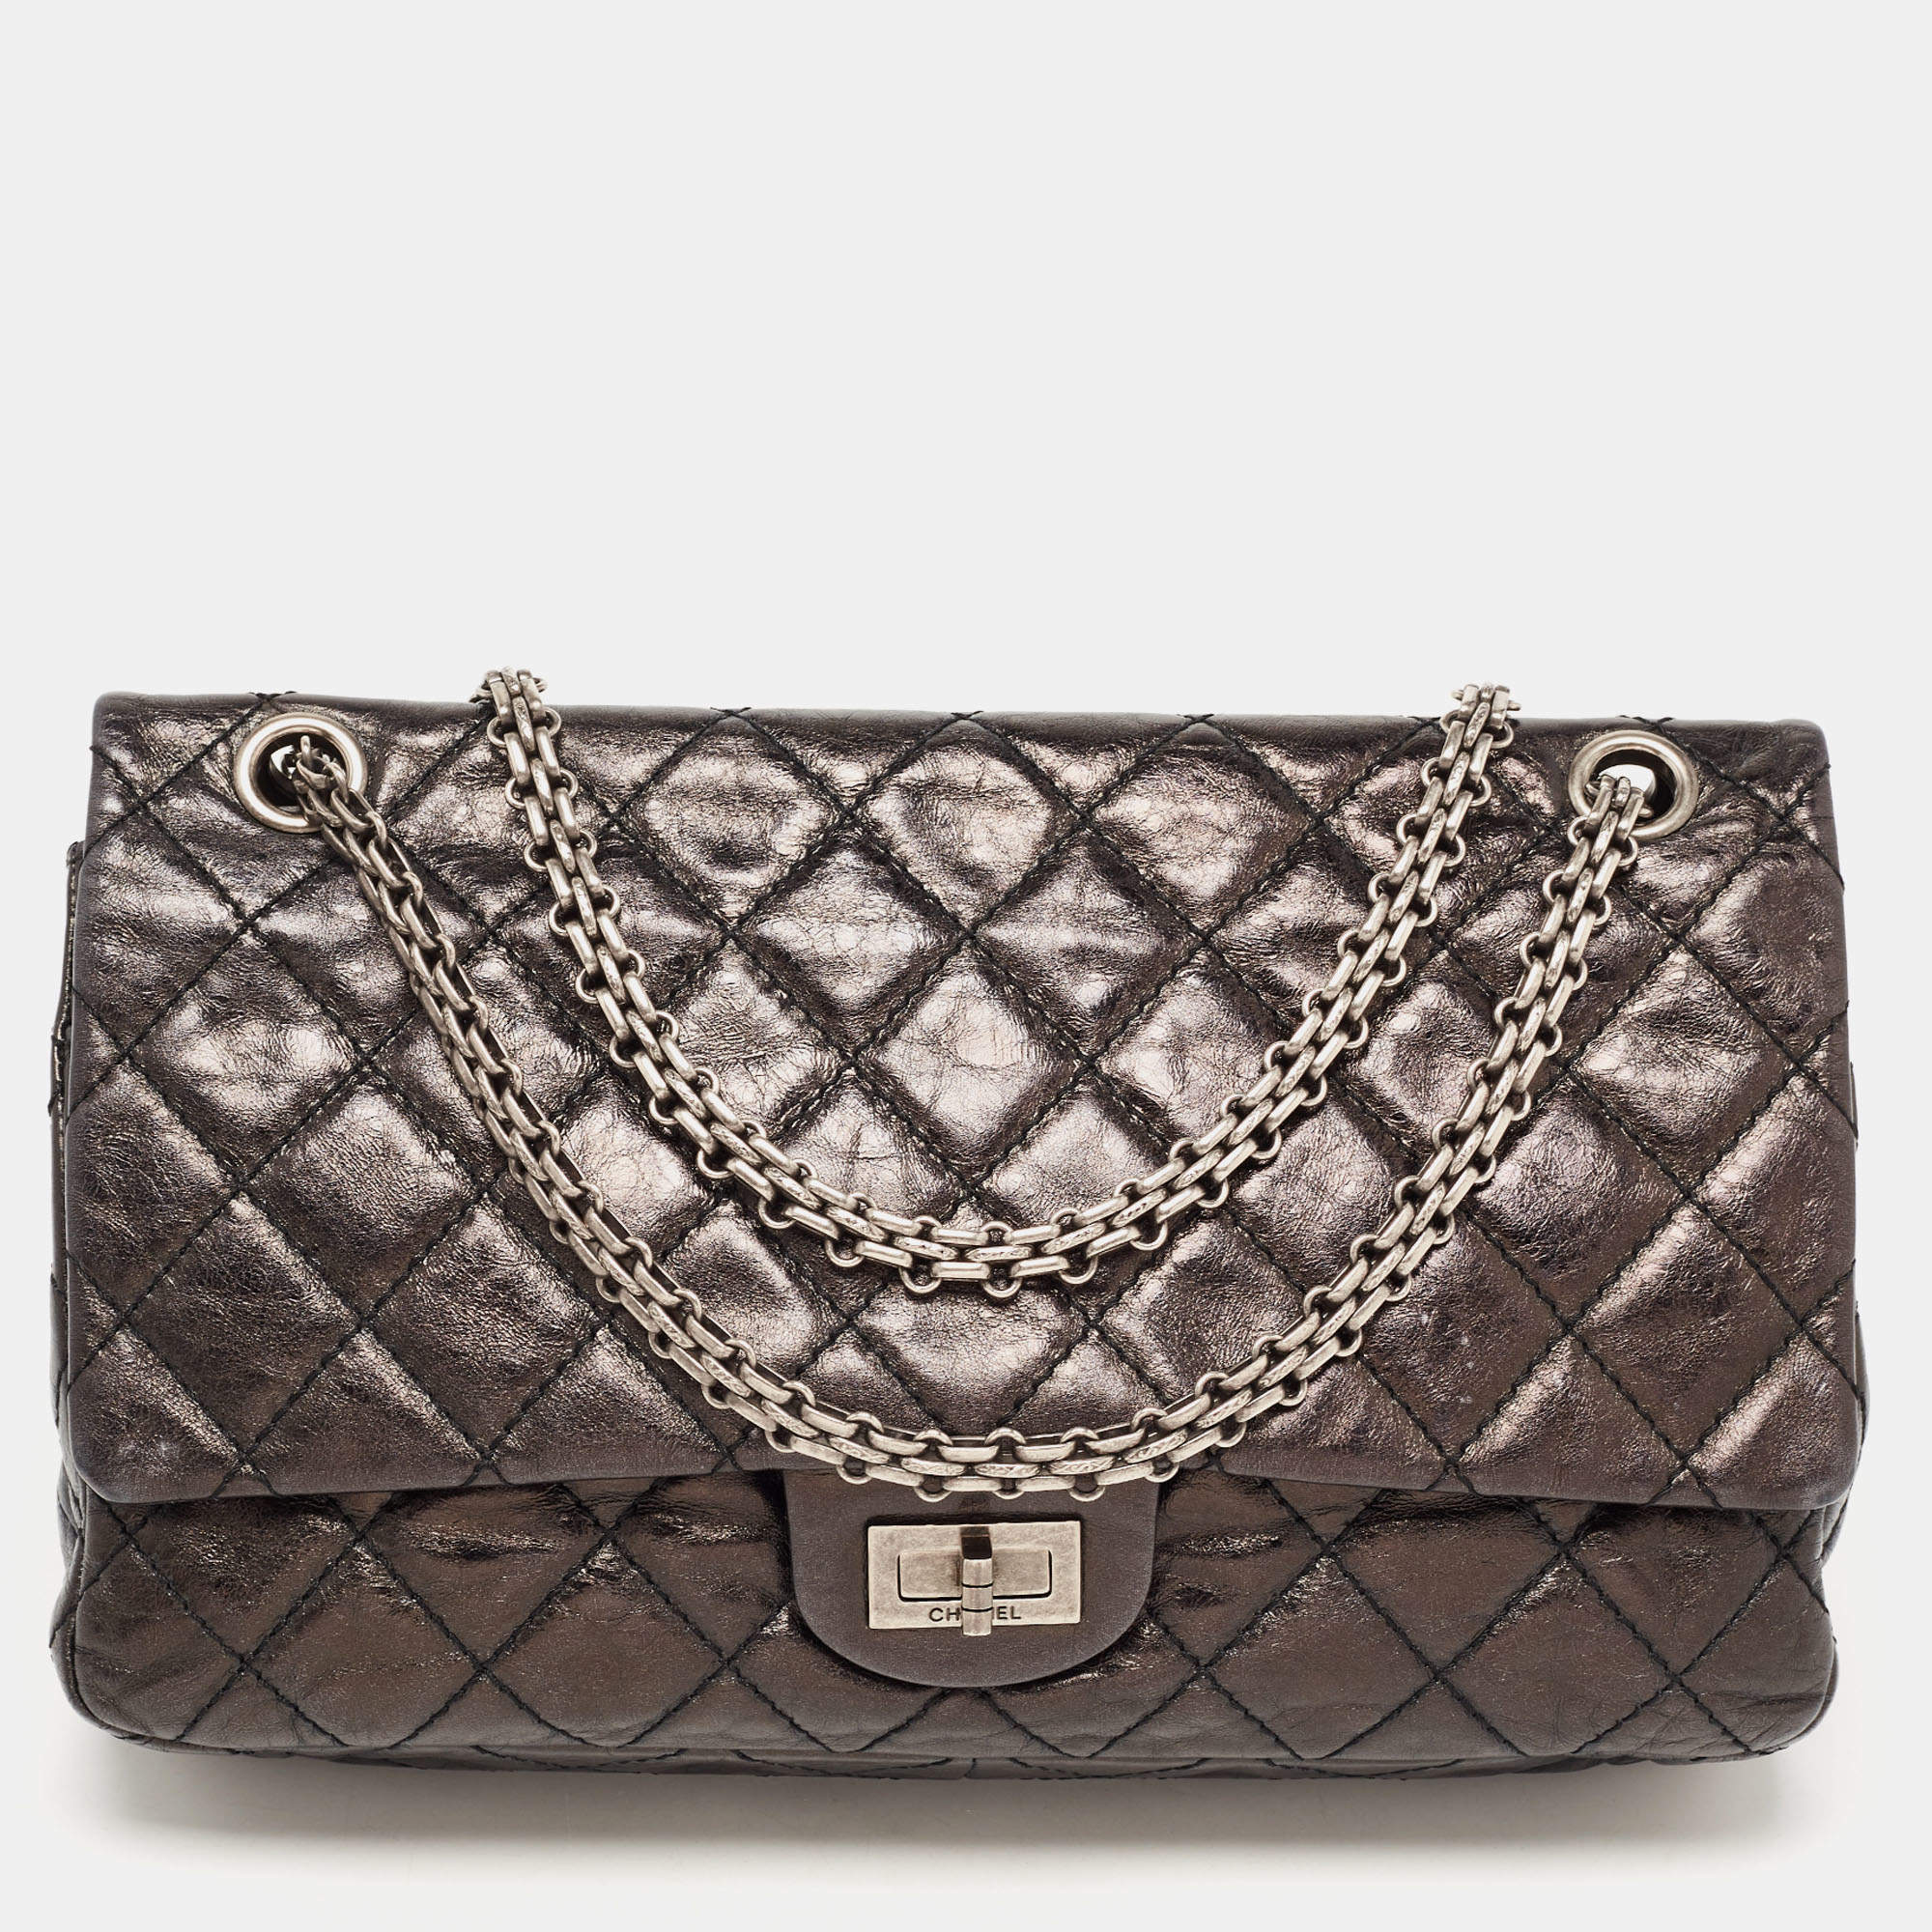 Chanel 2.55 Reissue 227 Double Flap Shoulder Bag